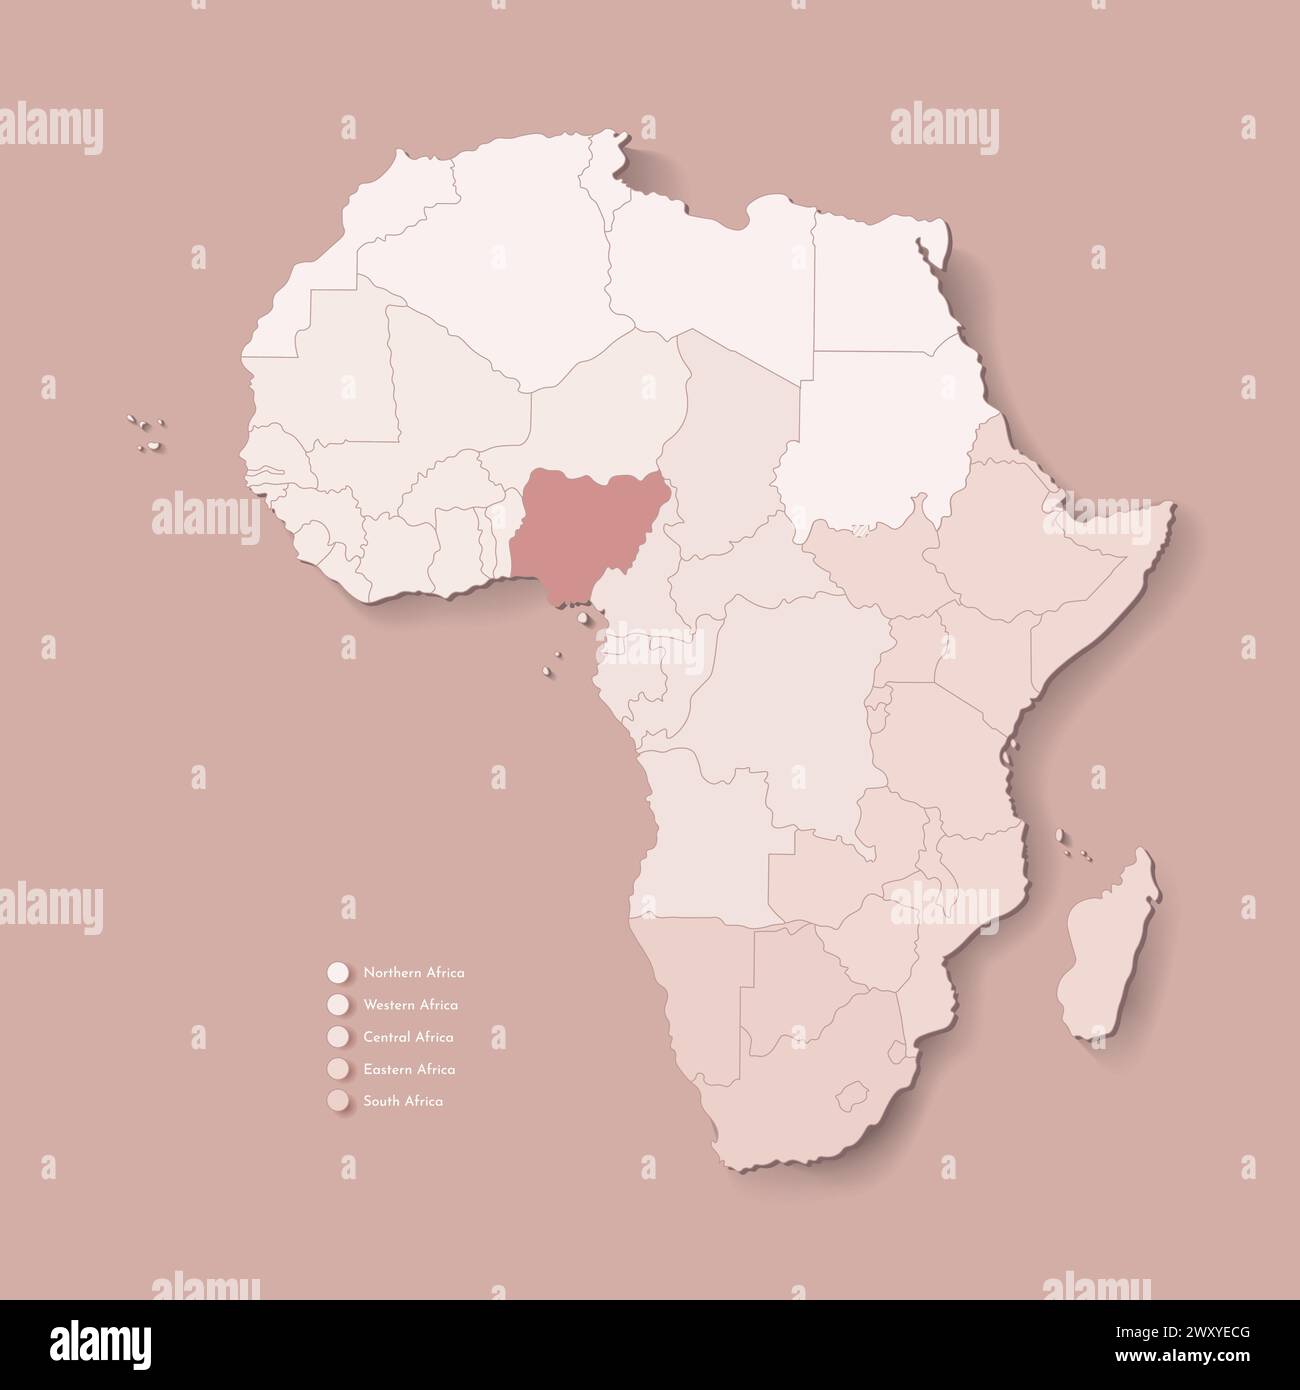 Illustrazione vettoriale con continente africano con confini di tutti gli stati e paese marcato Nigeria. Mappa politica in colori marroni con occidentale, sud AN Illustrazione Vettoriale